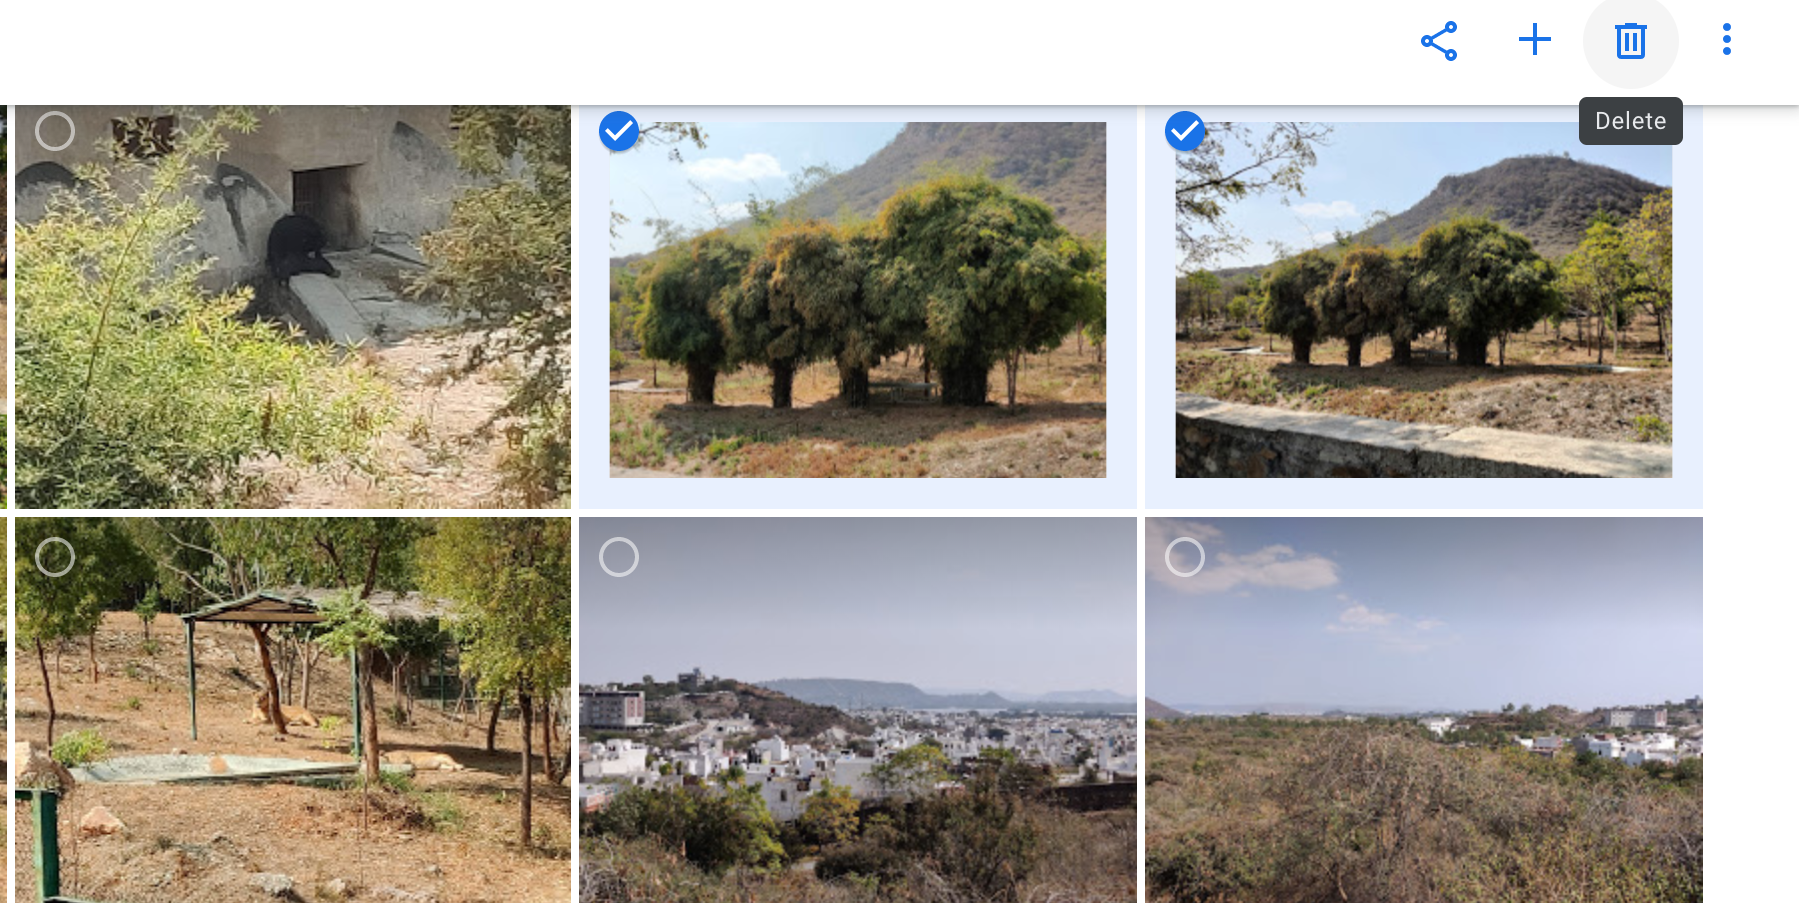 Delete photos on Google Photos for web